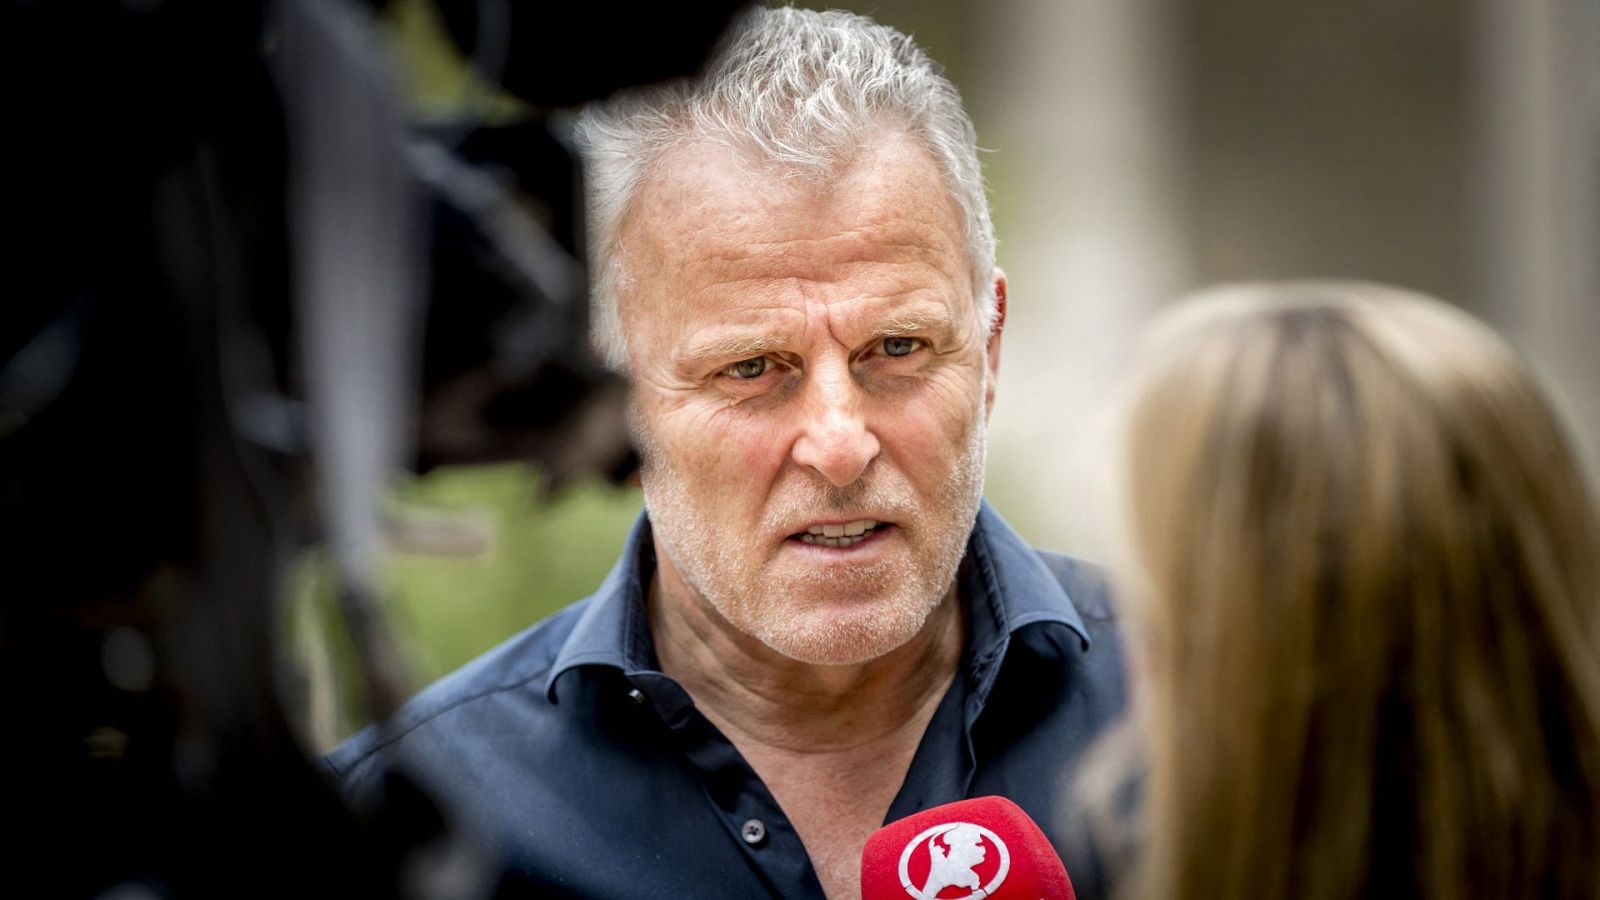 Muere Peter R. de Vries, el periodista de investigación tiroteado en Ámsterdam